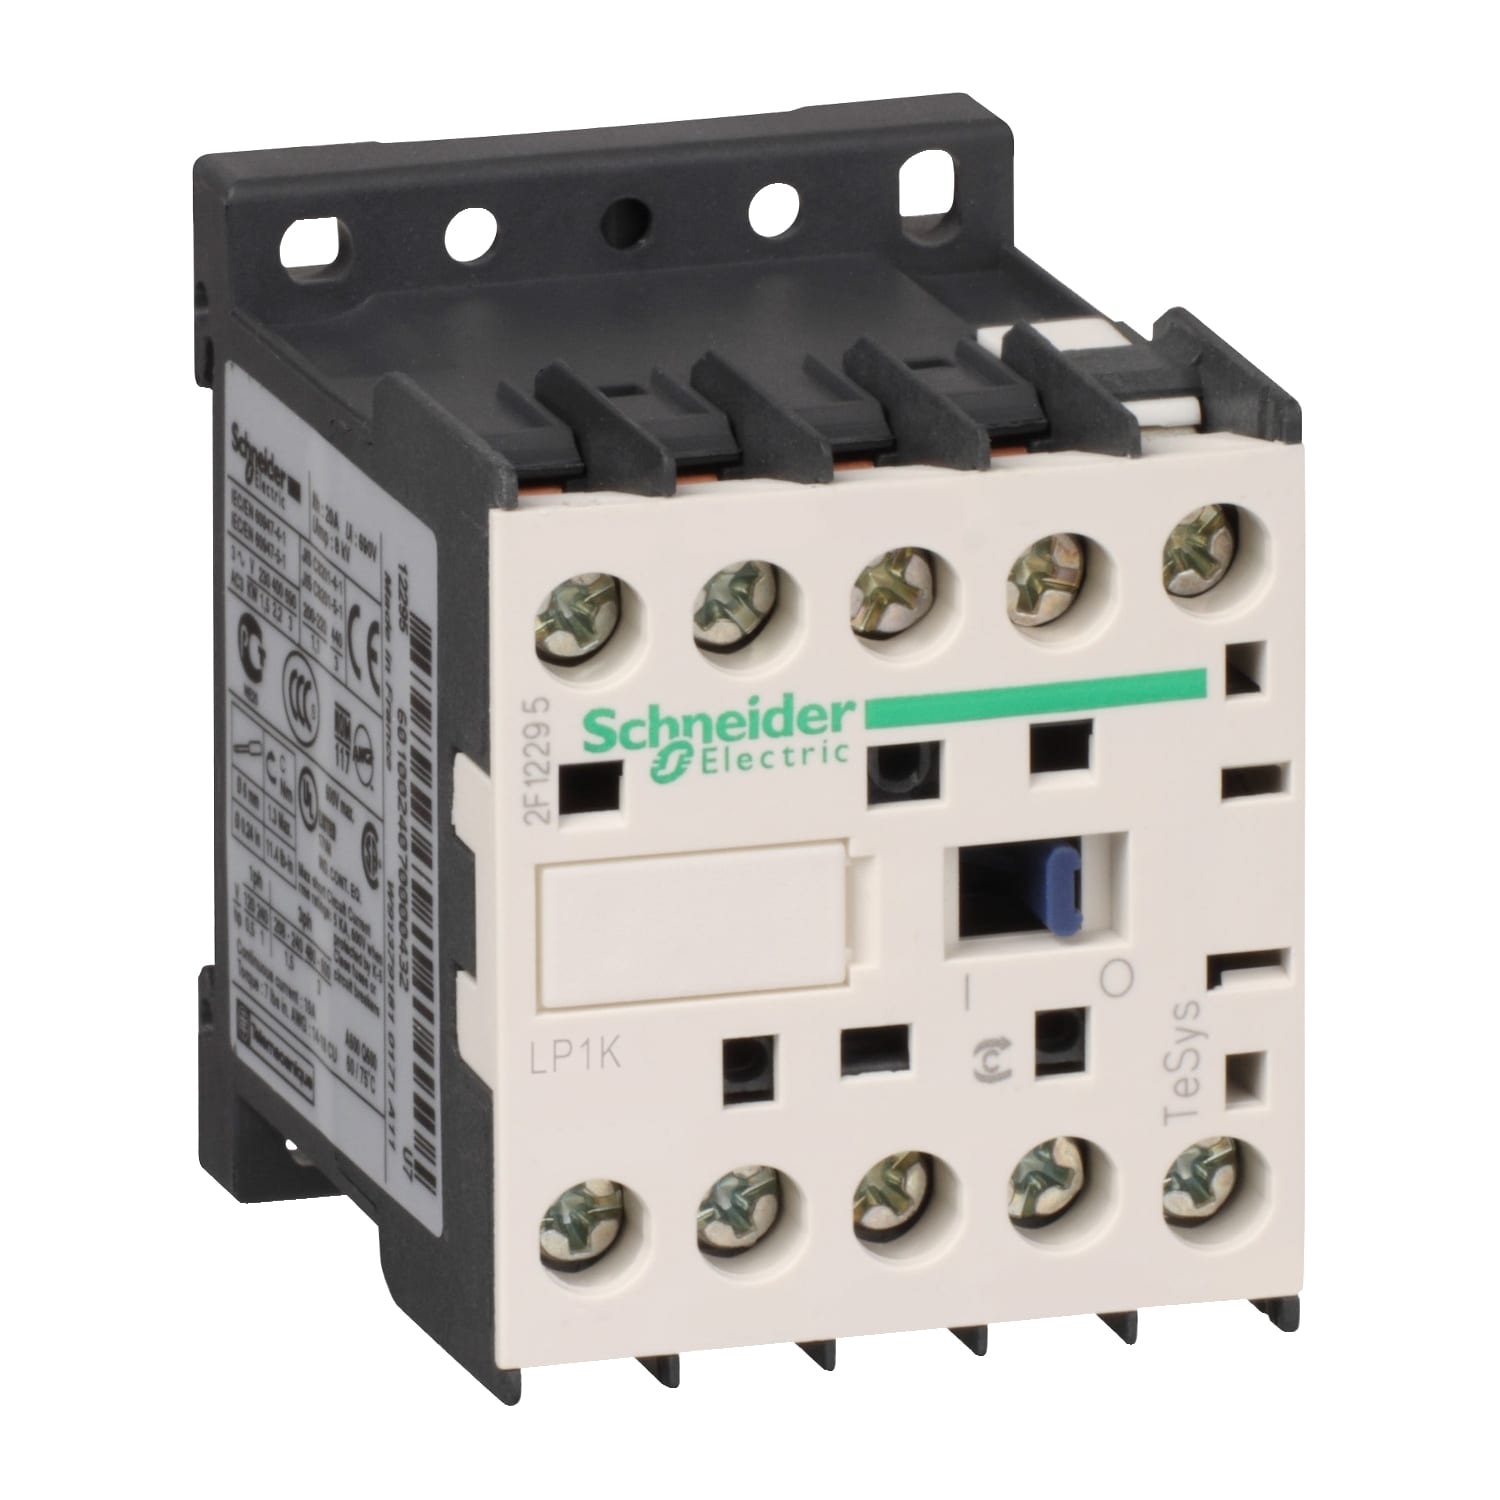 Schneider Electric - TeSys LP1K - contacteur - 4P - AC-1 440V - 20A - bobine 24Vcc